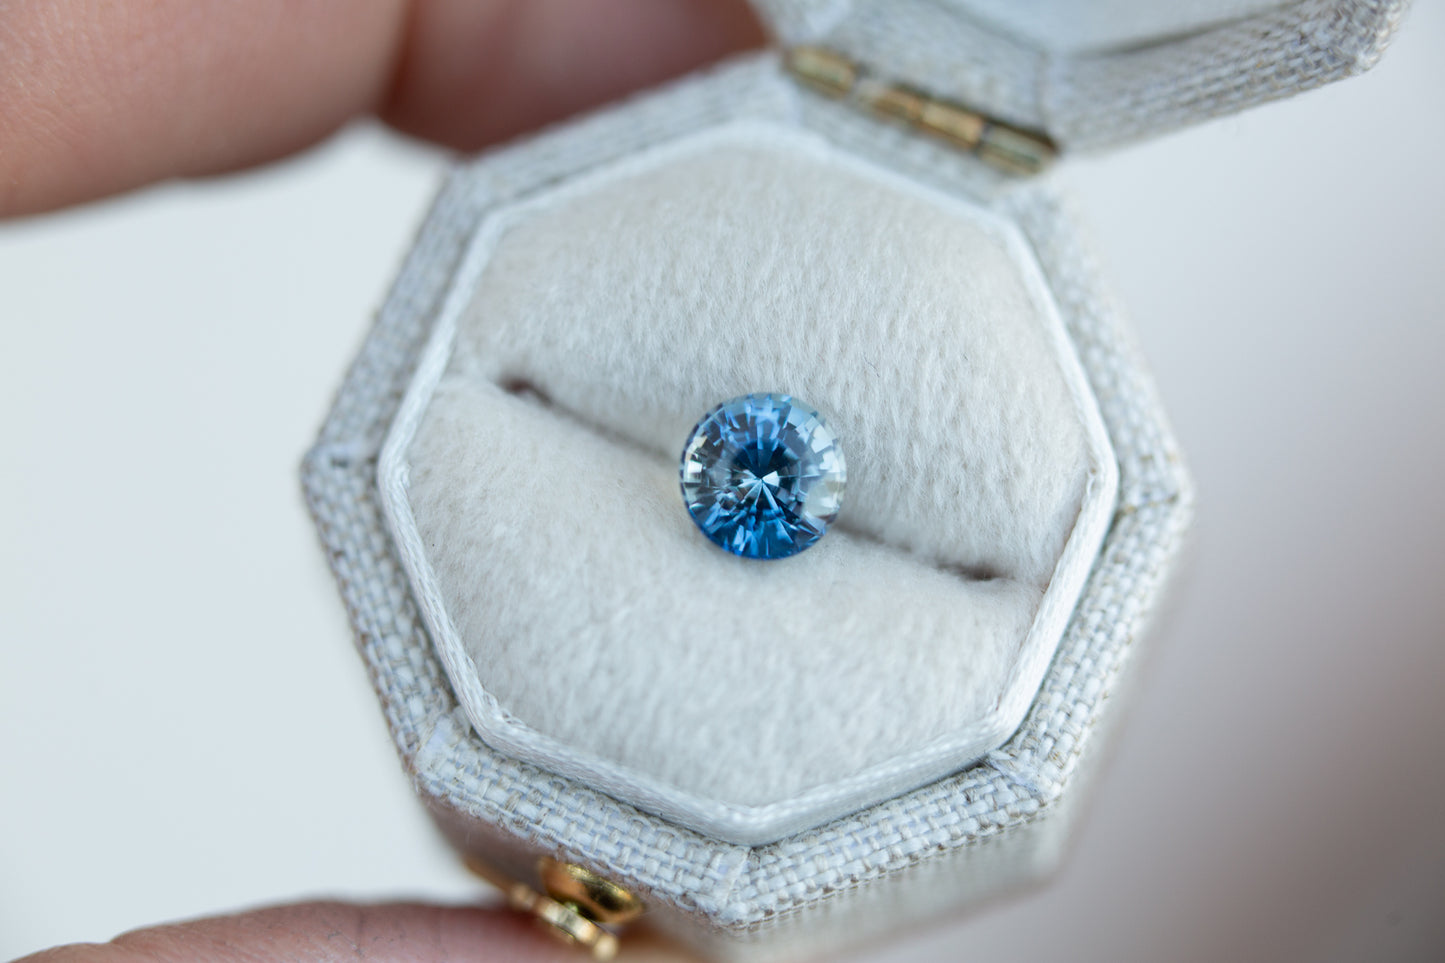 1.23ct round blue sapphire